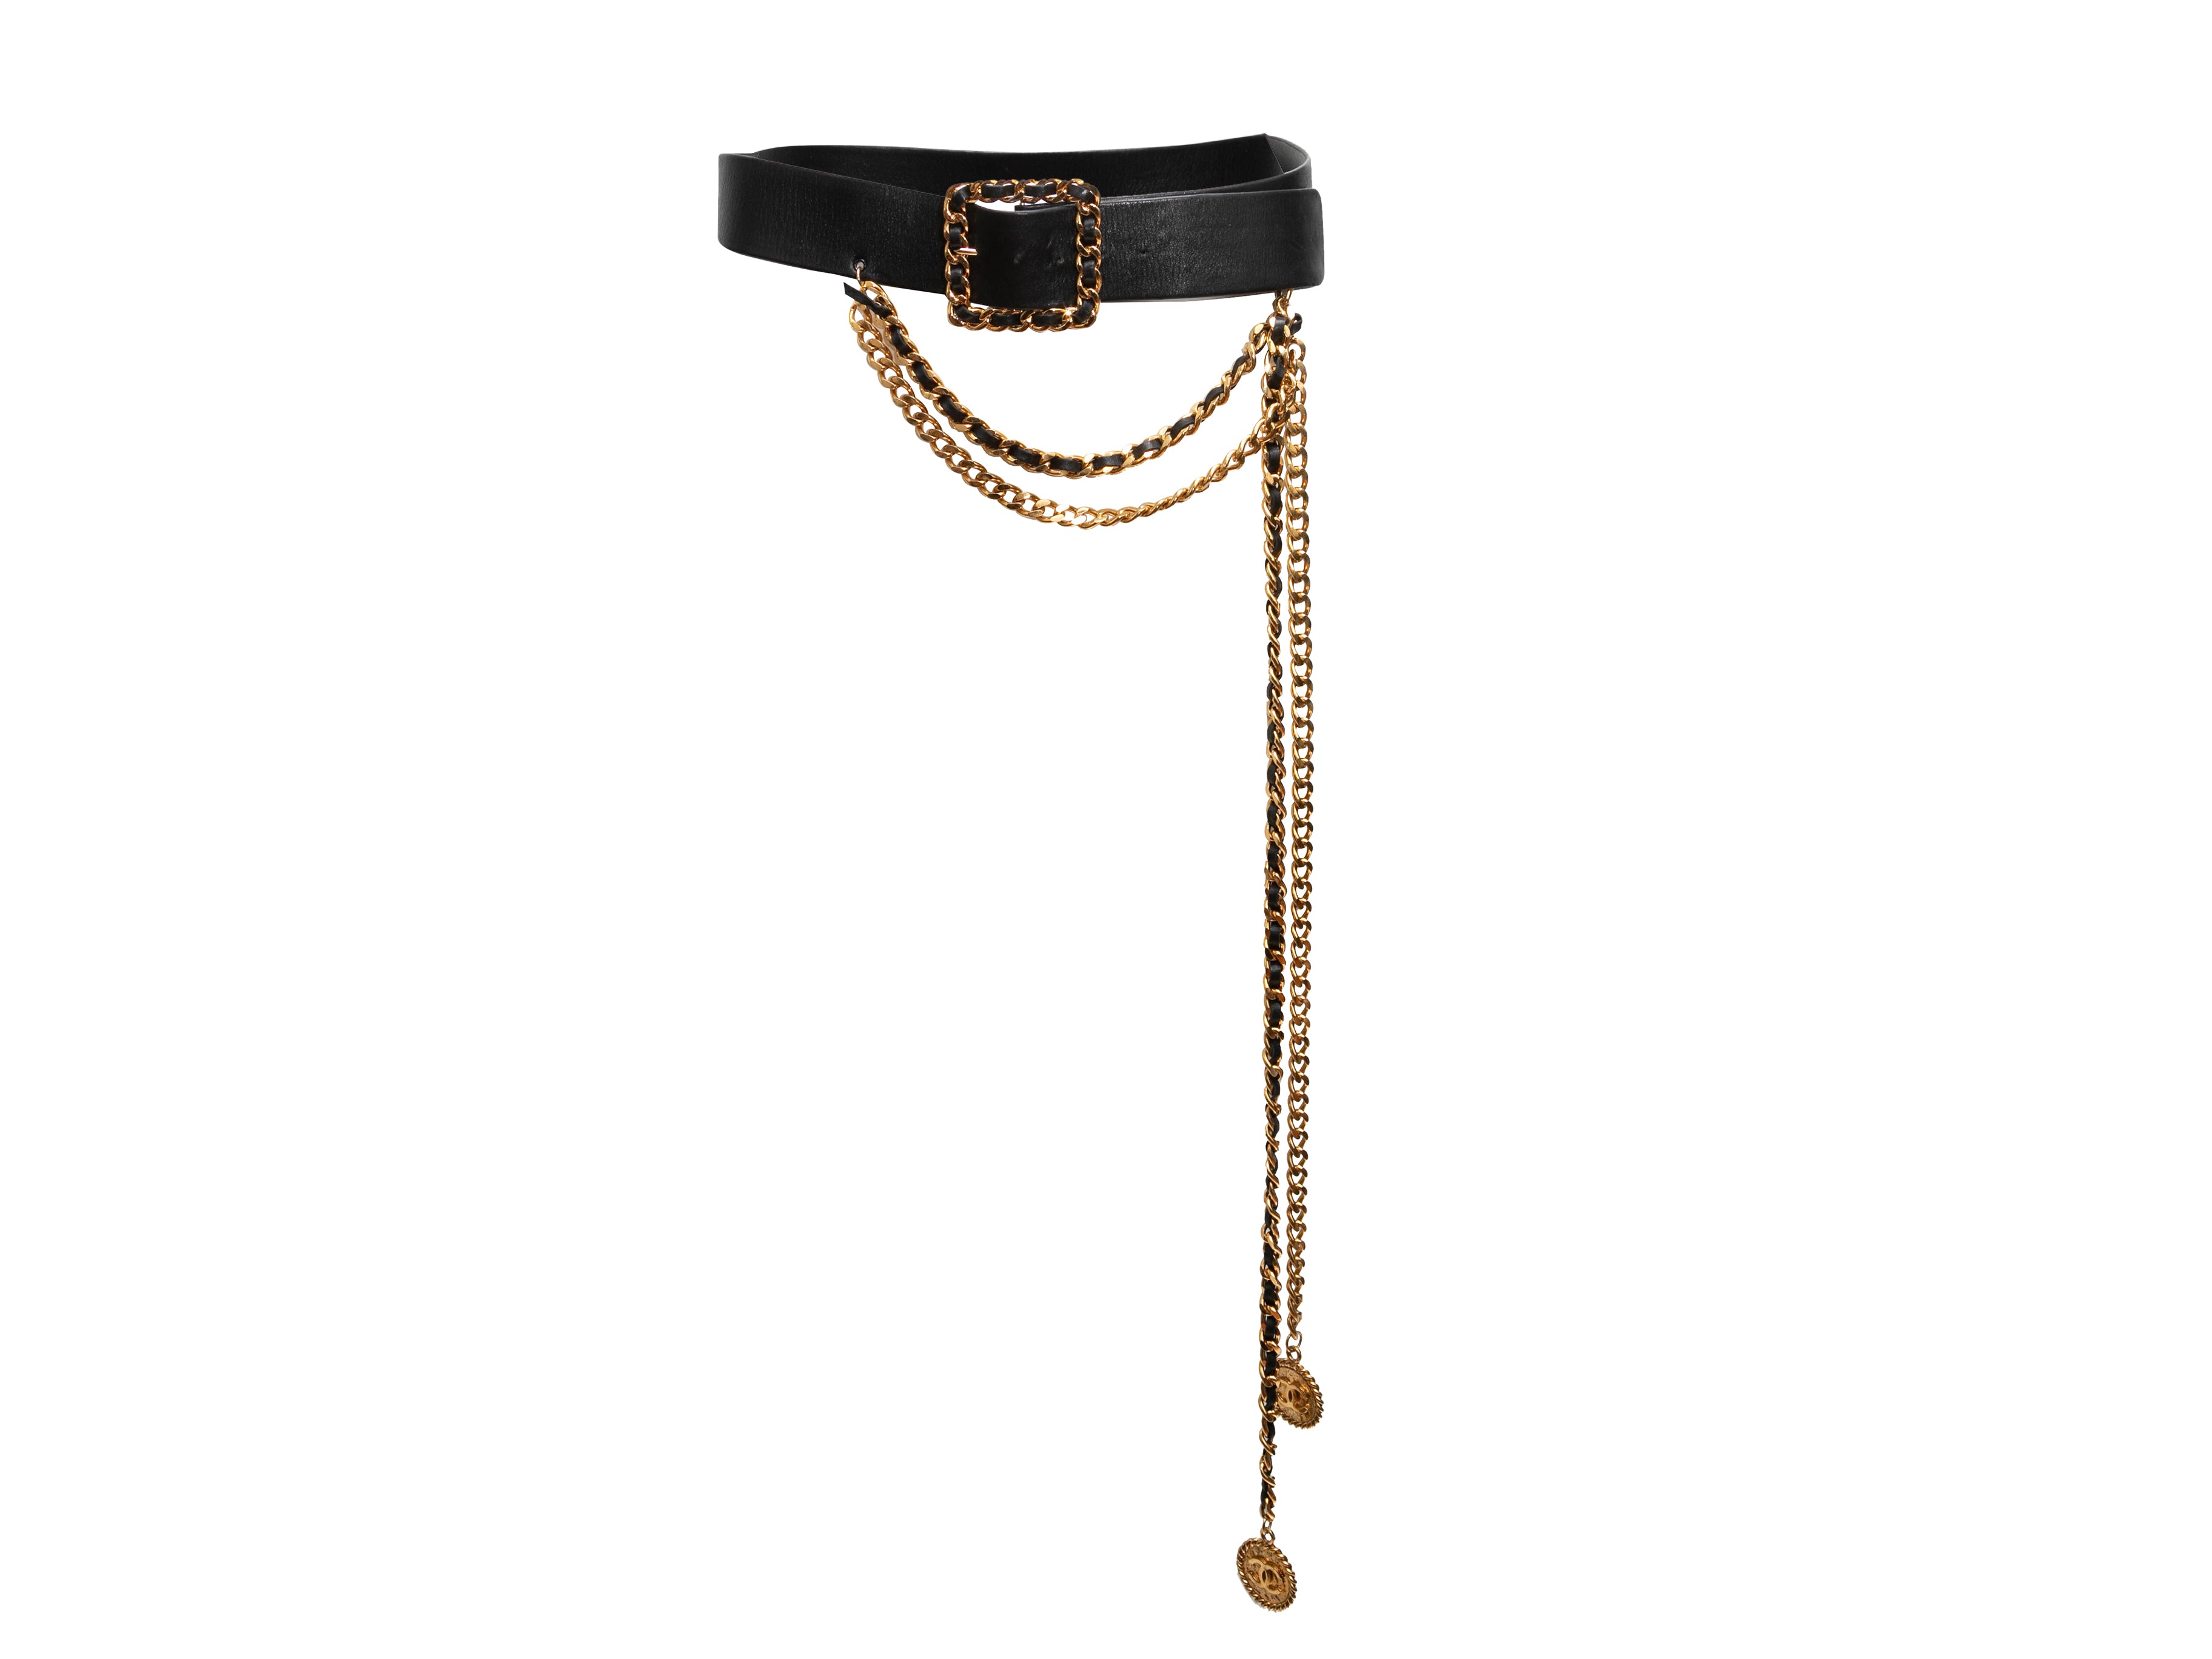 Vintage Black Chanel Spring/Summer 1993 Leather & Chain-Link Belt Size US S - Designer Revival